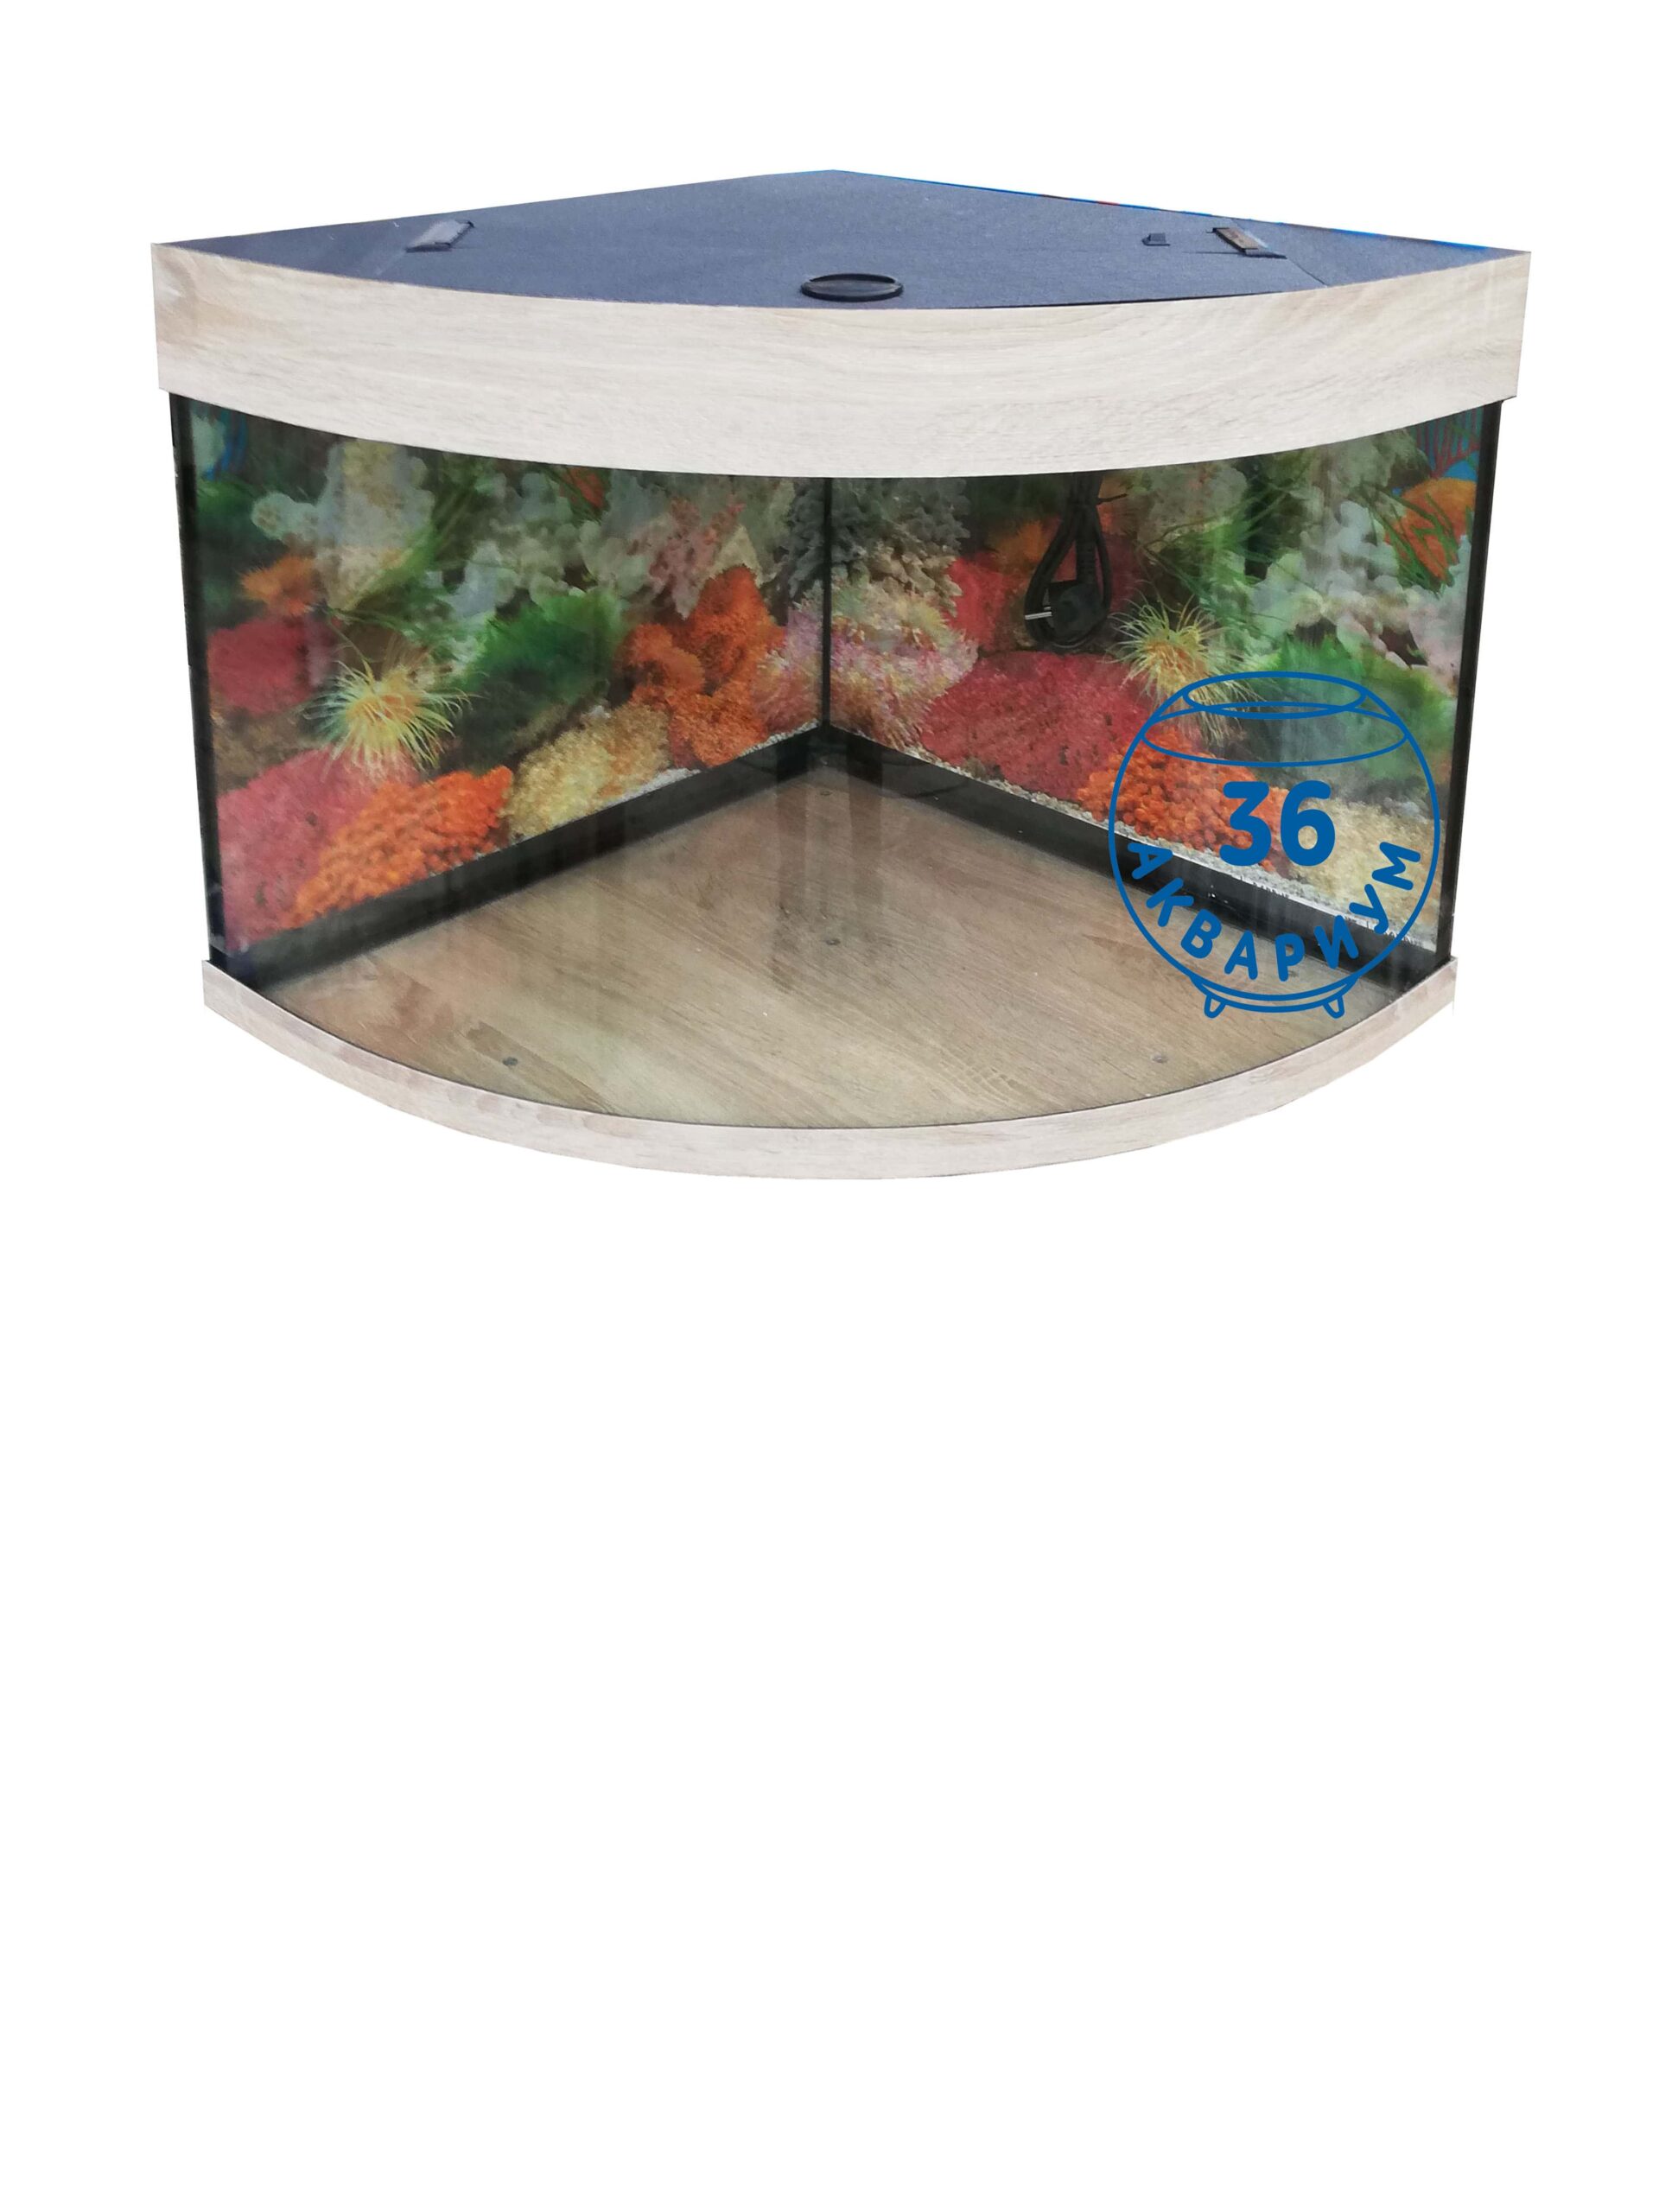 аквариум 210 литров угловой